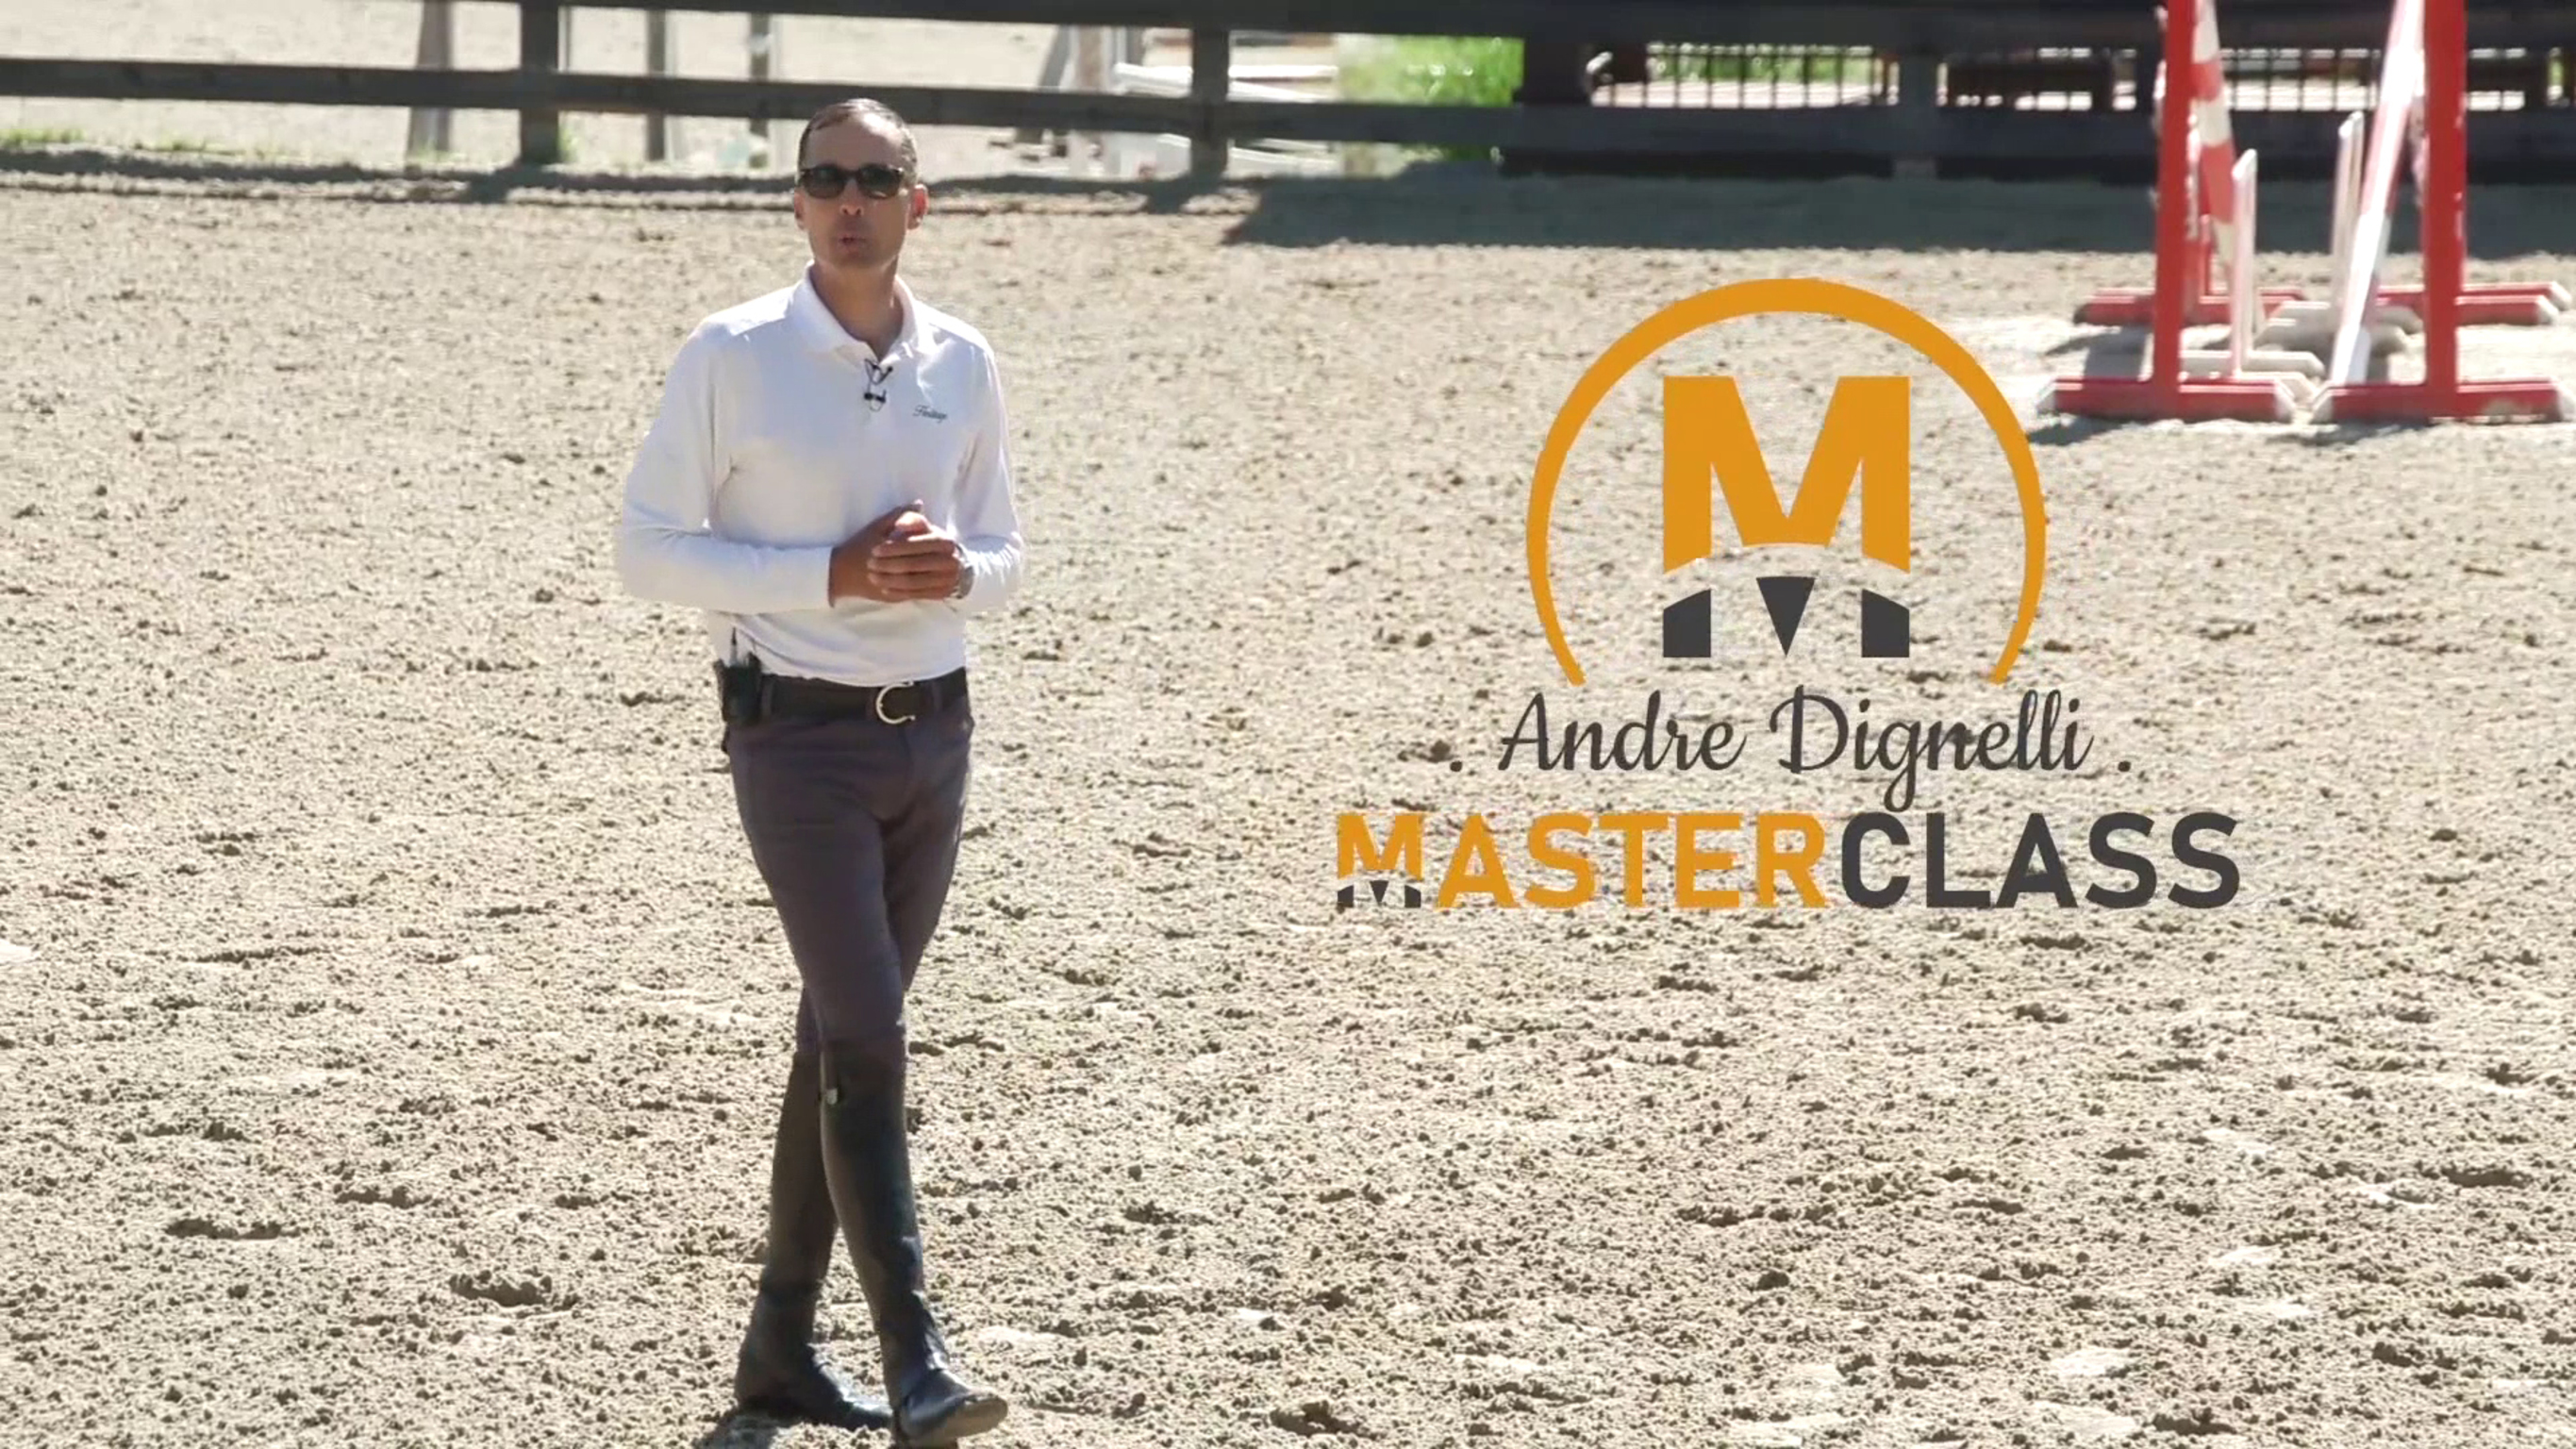 Andre Dignelli Masterclass